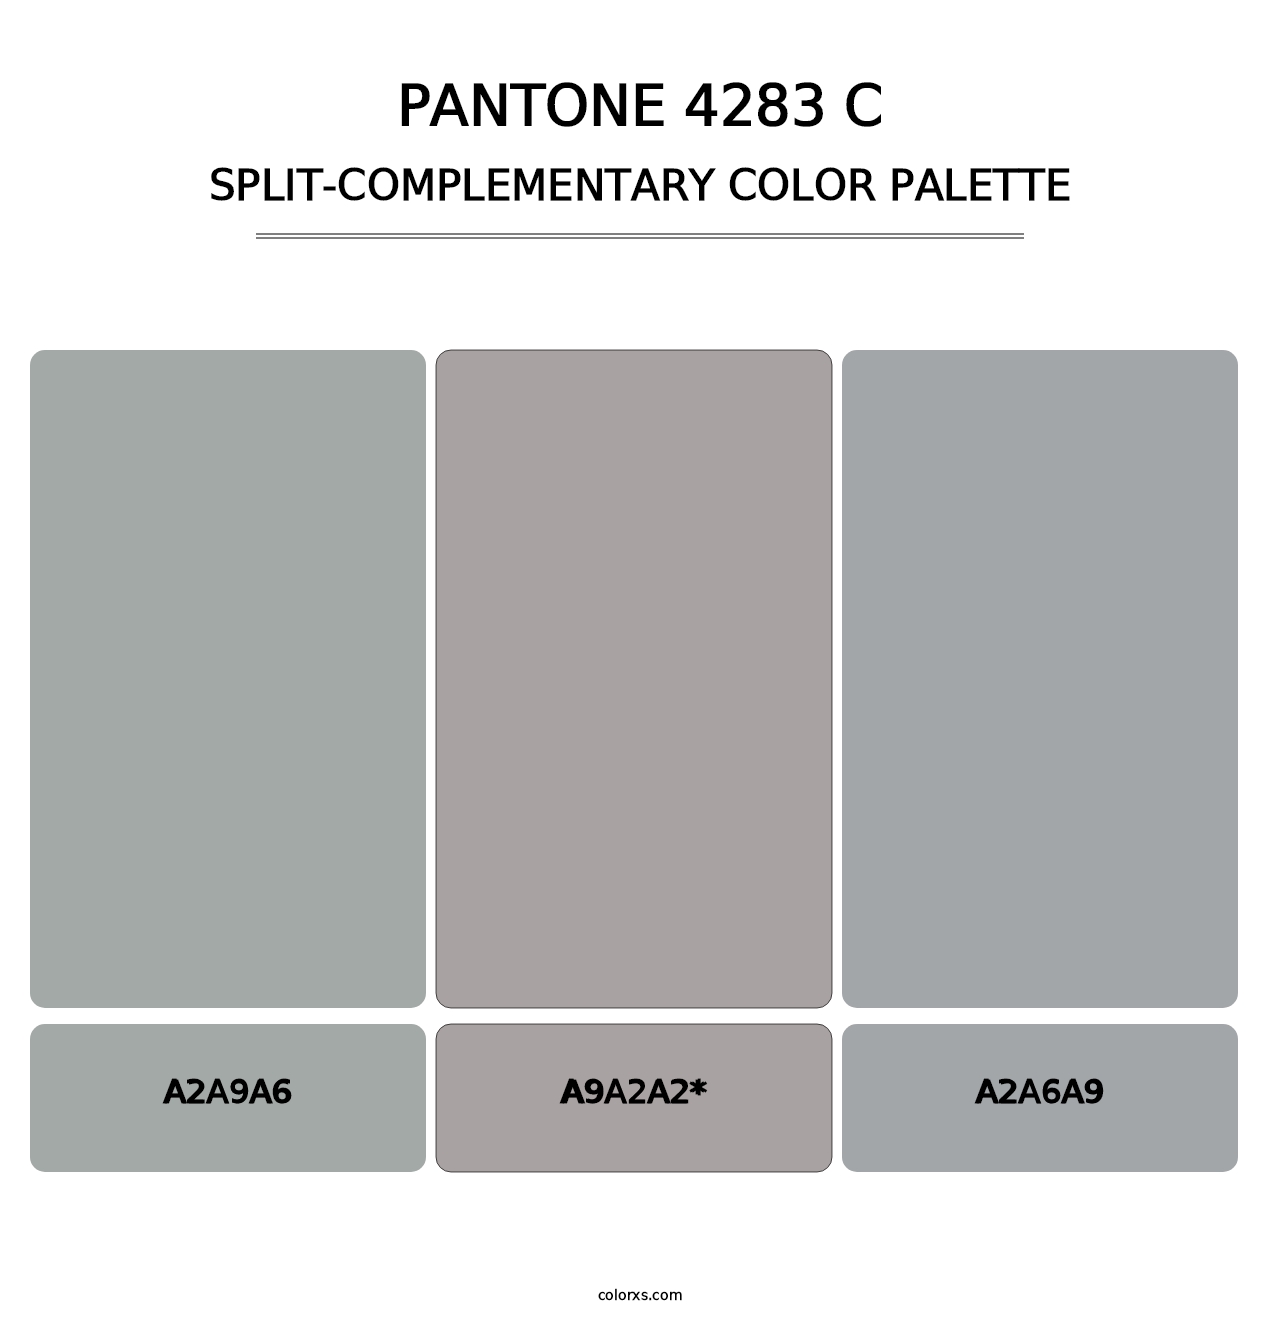 PANTONE 4283 C - Split-Complementary Color Palette